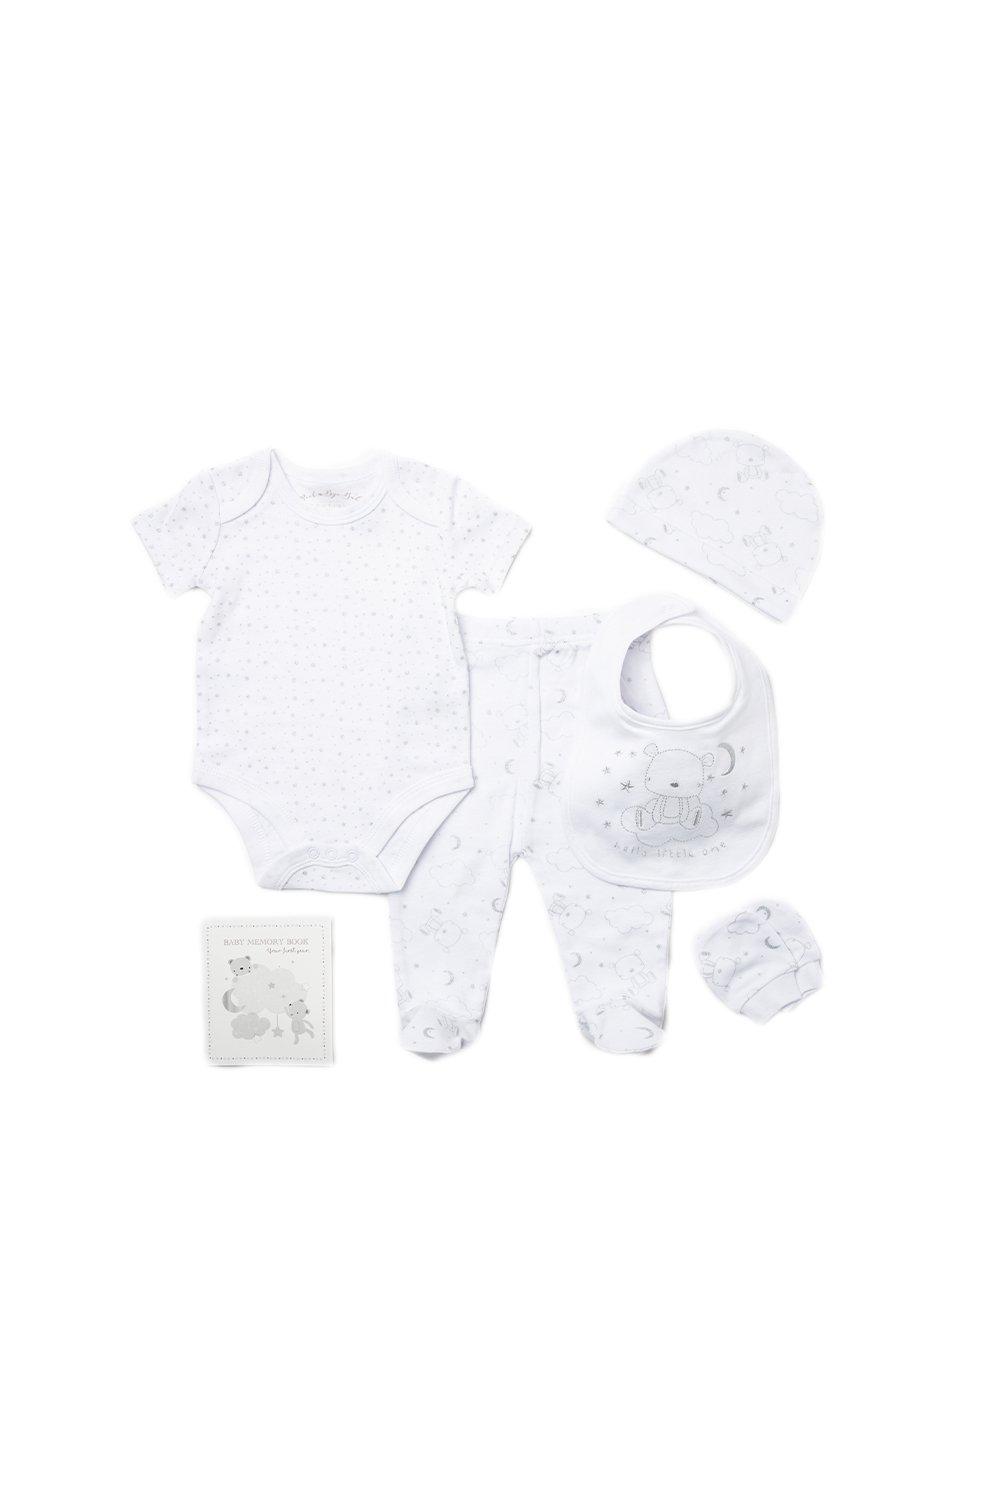 цена Хлопковый подарочный набор из 6 предметов с вышивкой медведя для ребенка Rock a Bye Baby, белый